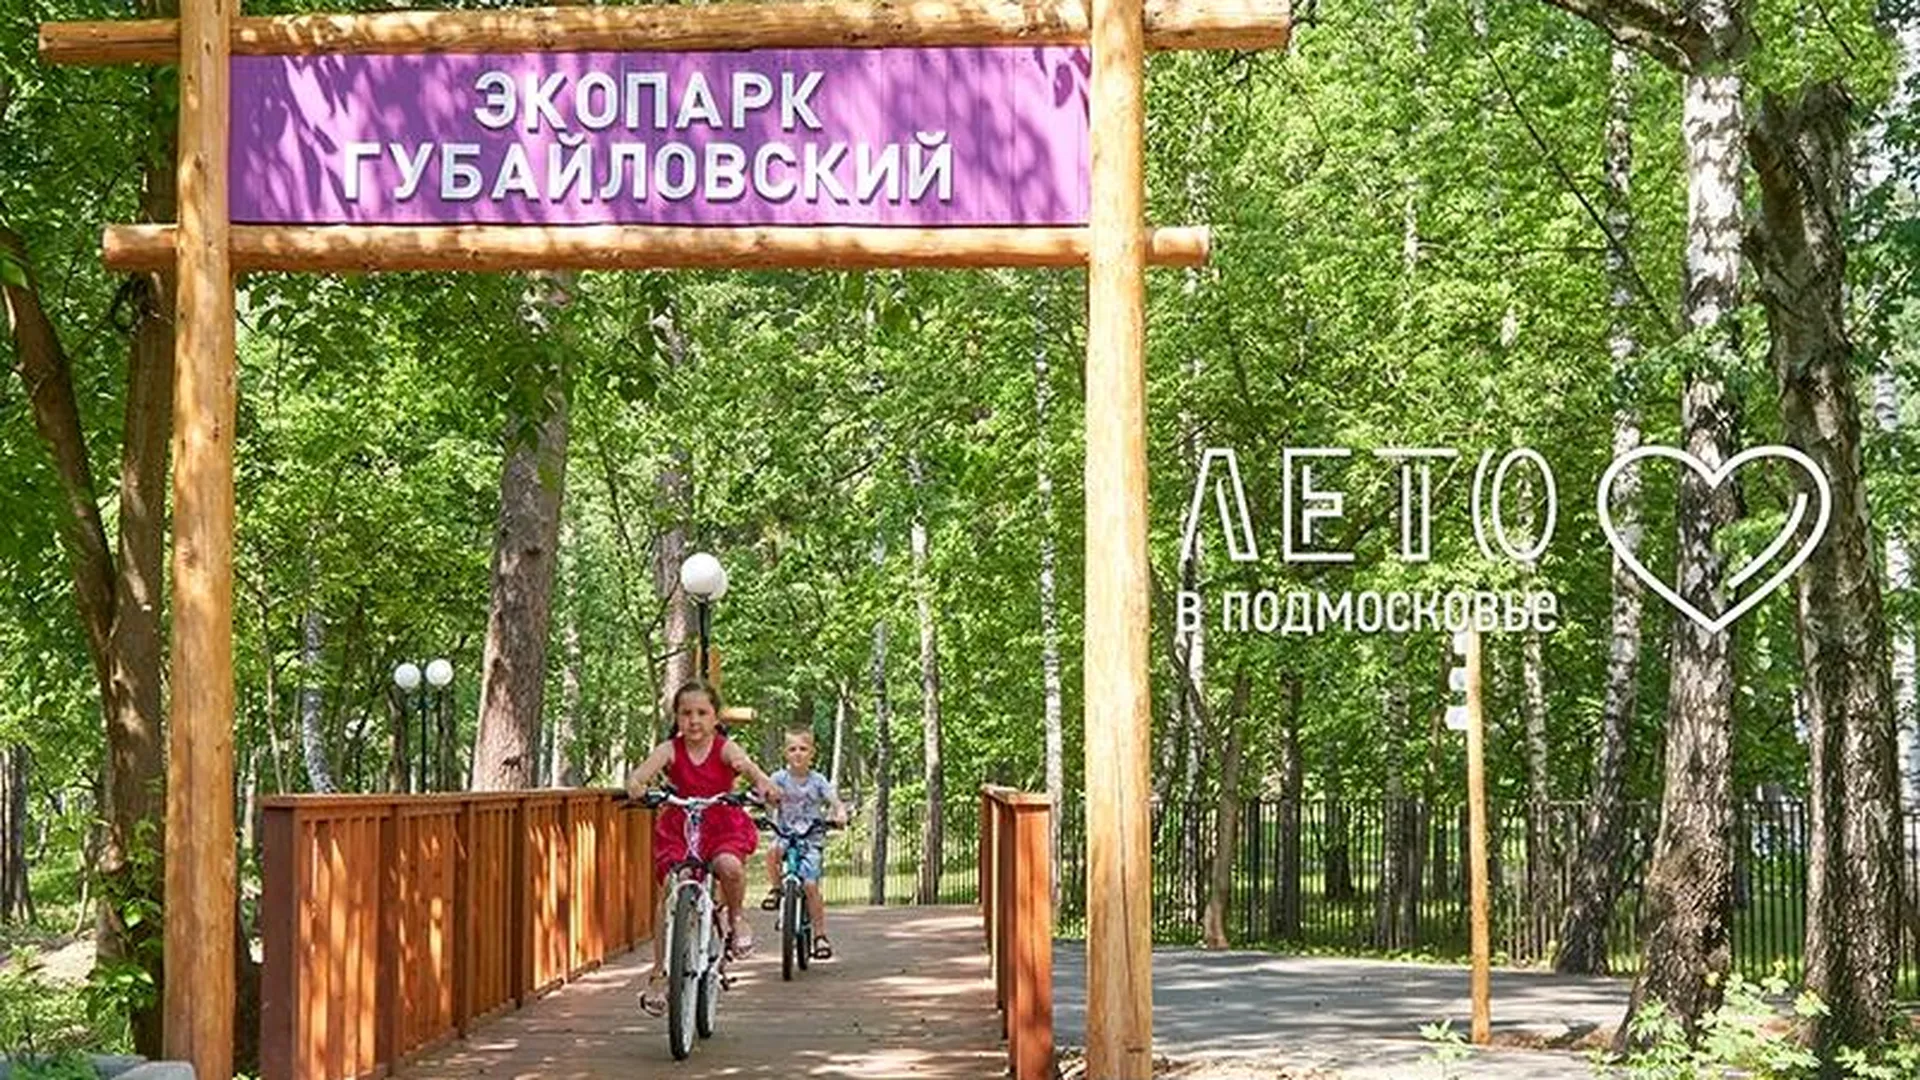 Дикая природа и спорт: за что экопарк «Губайловский» так любят жители Красногорска 